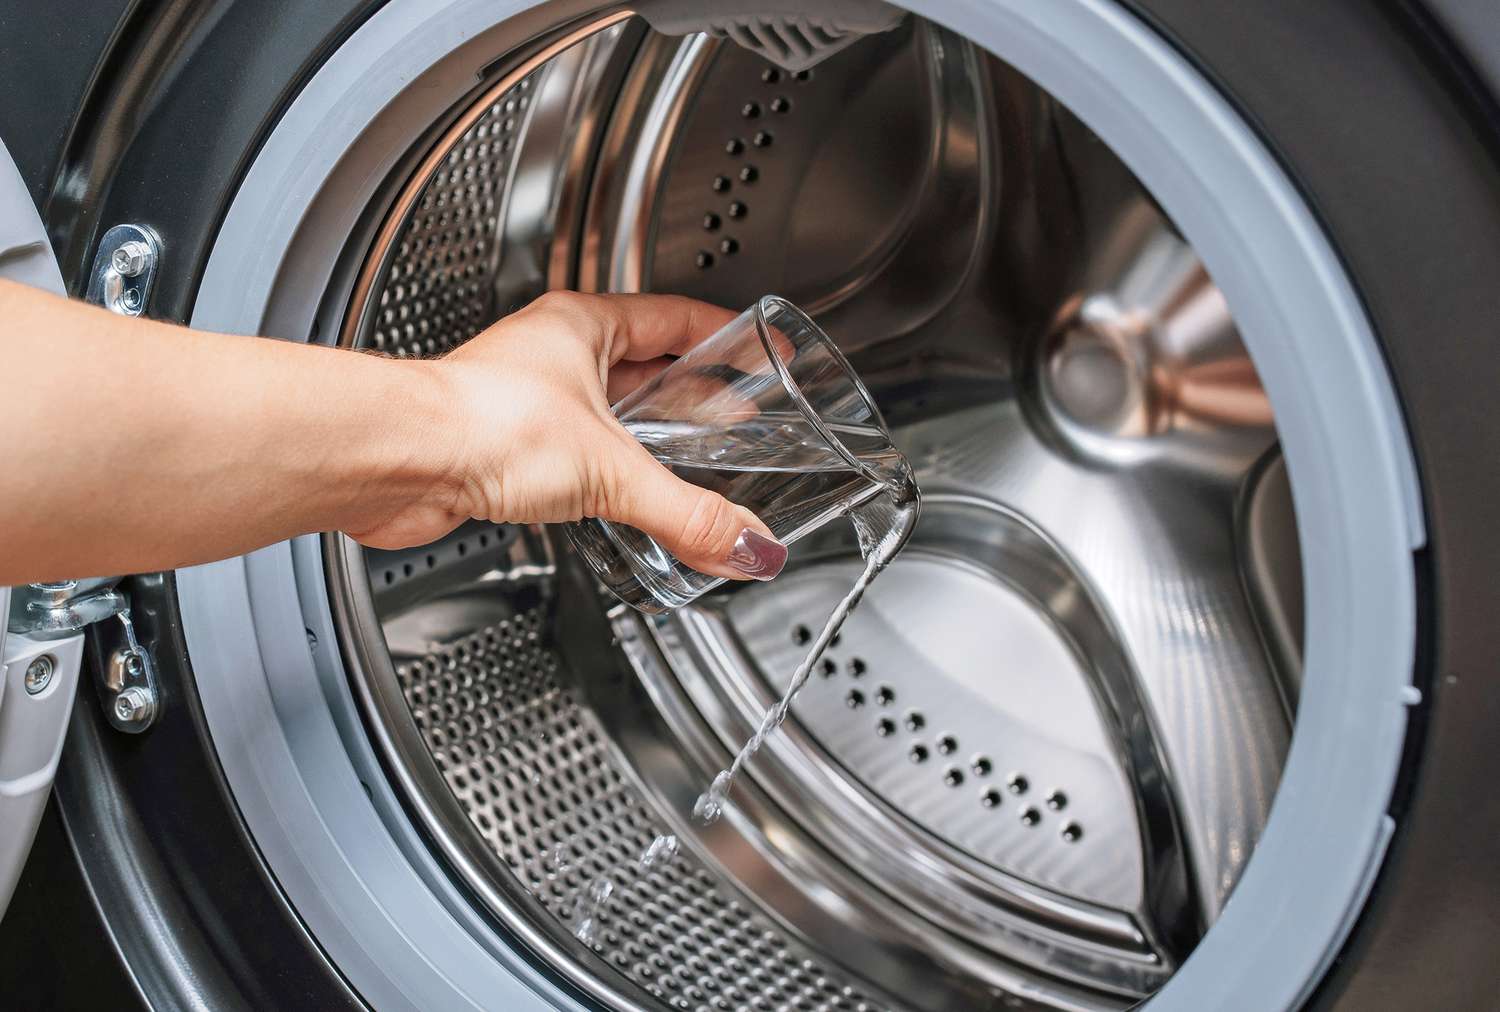 Bộ lọc máy giặt Bạn có thể thường xuyên vệ sinh bẫy xơ vải của máy sấy, nhưng có thể bạn không nhận ra rằng có một bộ lọc tương tự cho máy giặt của bạn . Xác định vị trí bộ lọc bằng cách kiểm tra hướng dẫn sử dụng của máy giặt. Nó có thể nằm ở bộ khuấy trung tâm, ở môi trên của trống, phía sau cửa bẫy ở mặt trước của máy hoặc gần máy bơm nước hoặc ống thoát nước.  Sau khi xác định được vị trí, hãy tháo bộ lọc và lau xung quanh vỏ bộ lọc. Ngâm bộ lọc vào bát với nước nóng có xà phòng trong 10 phút, sau đó chà nhẹ bằng bàn chải lông mềm. Đưa bộ lọc trở lại vỏ của nó và chạy một chu trình rửa ngắn.